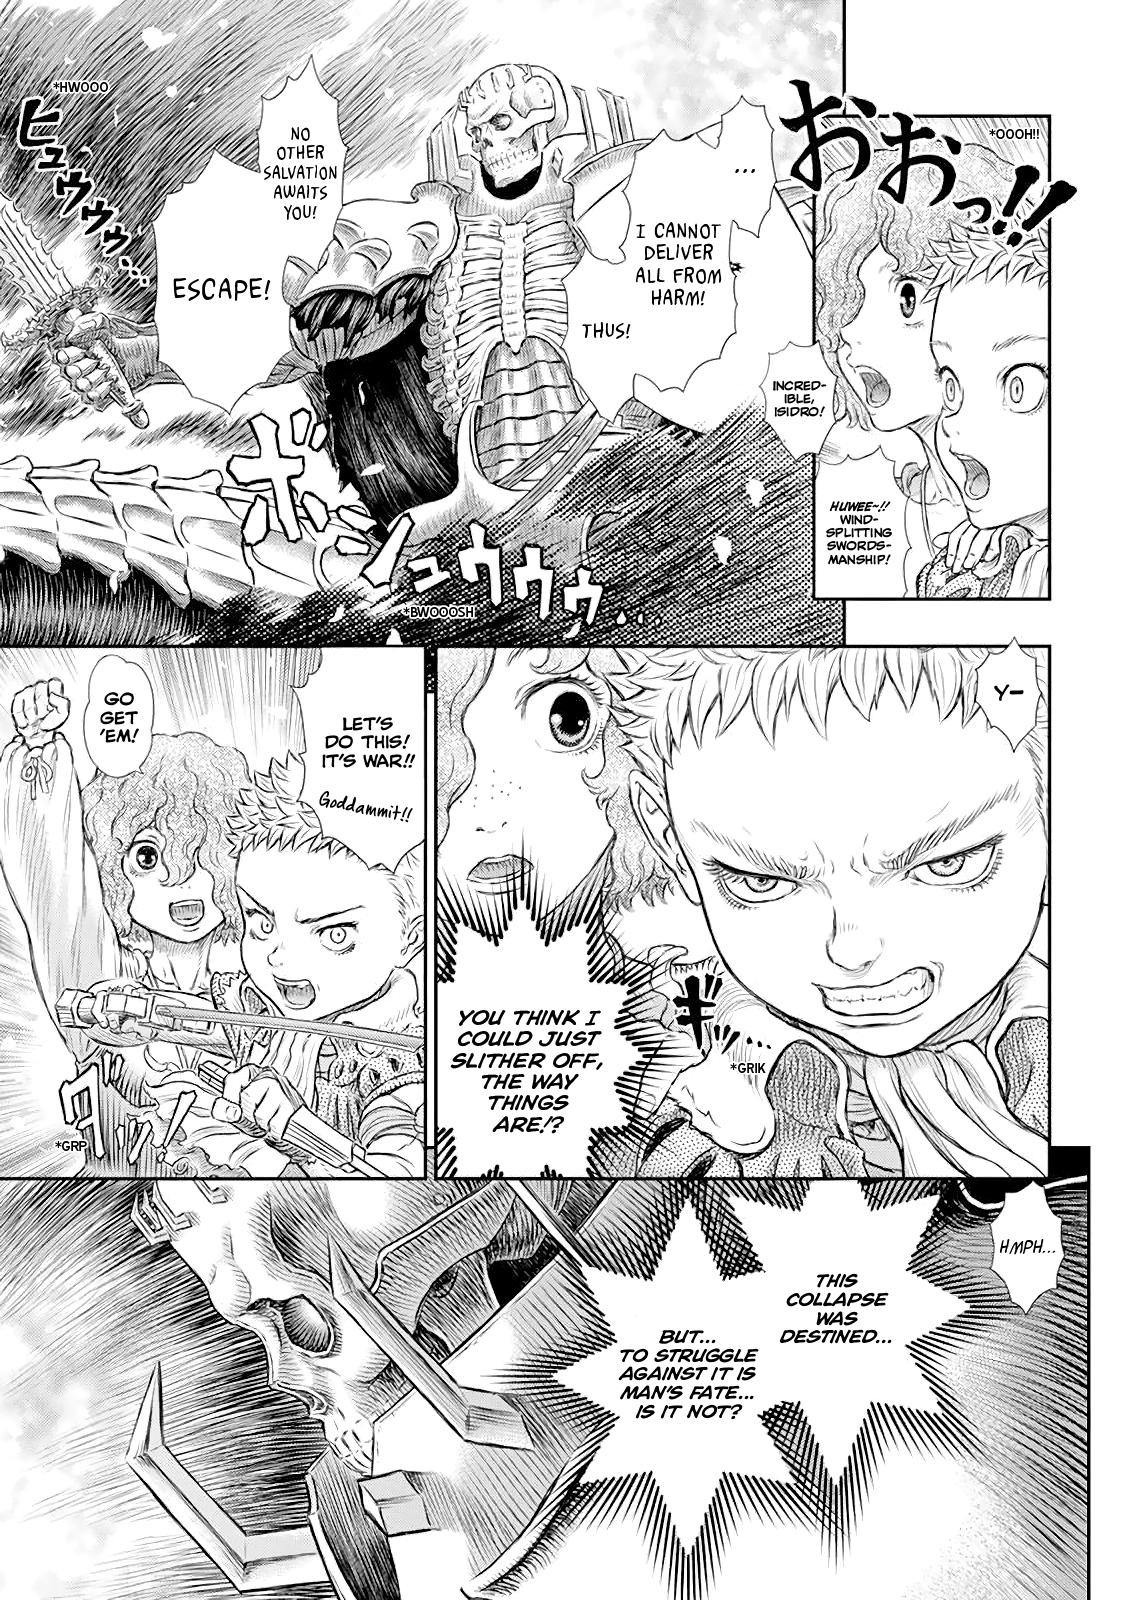 Berserk Manga Chapter 368 image 06